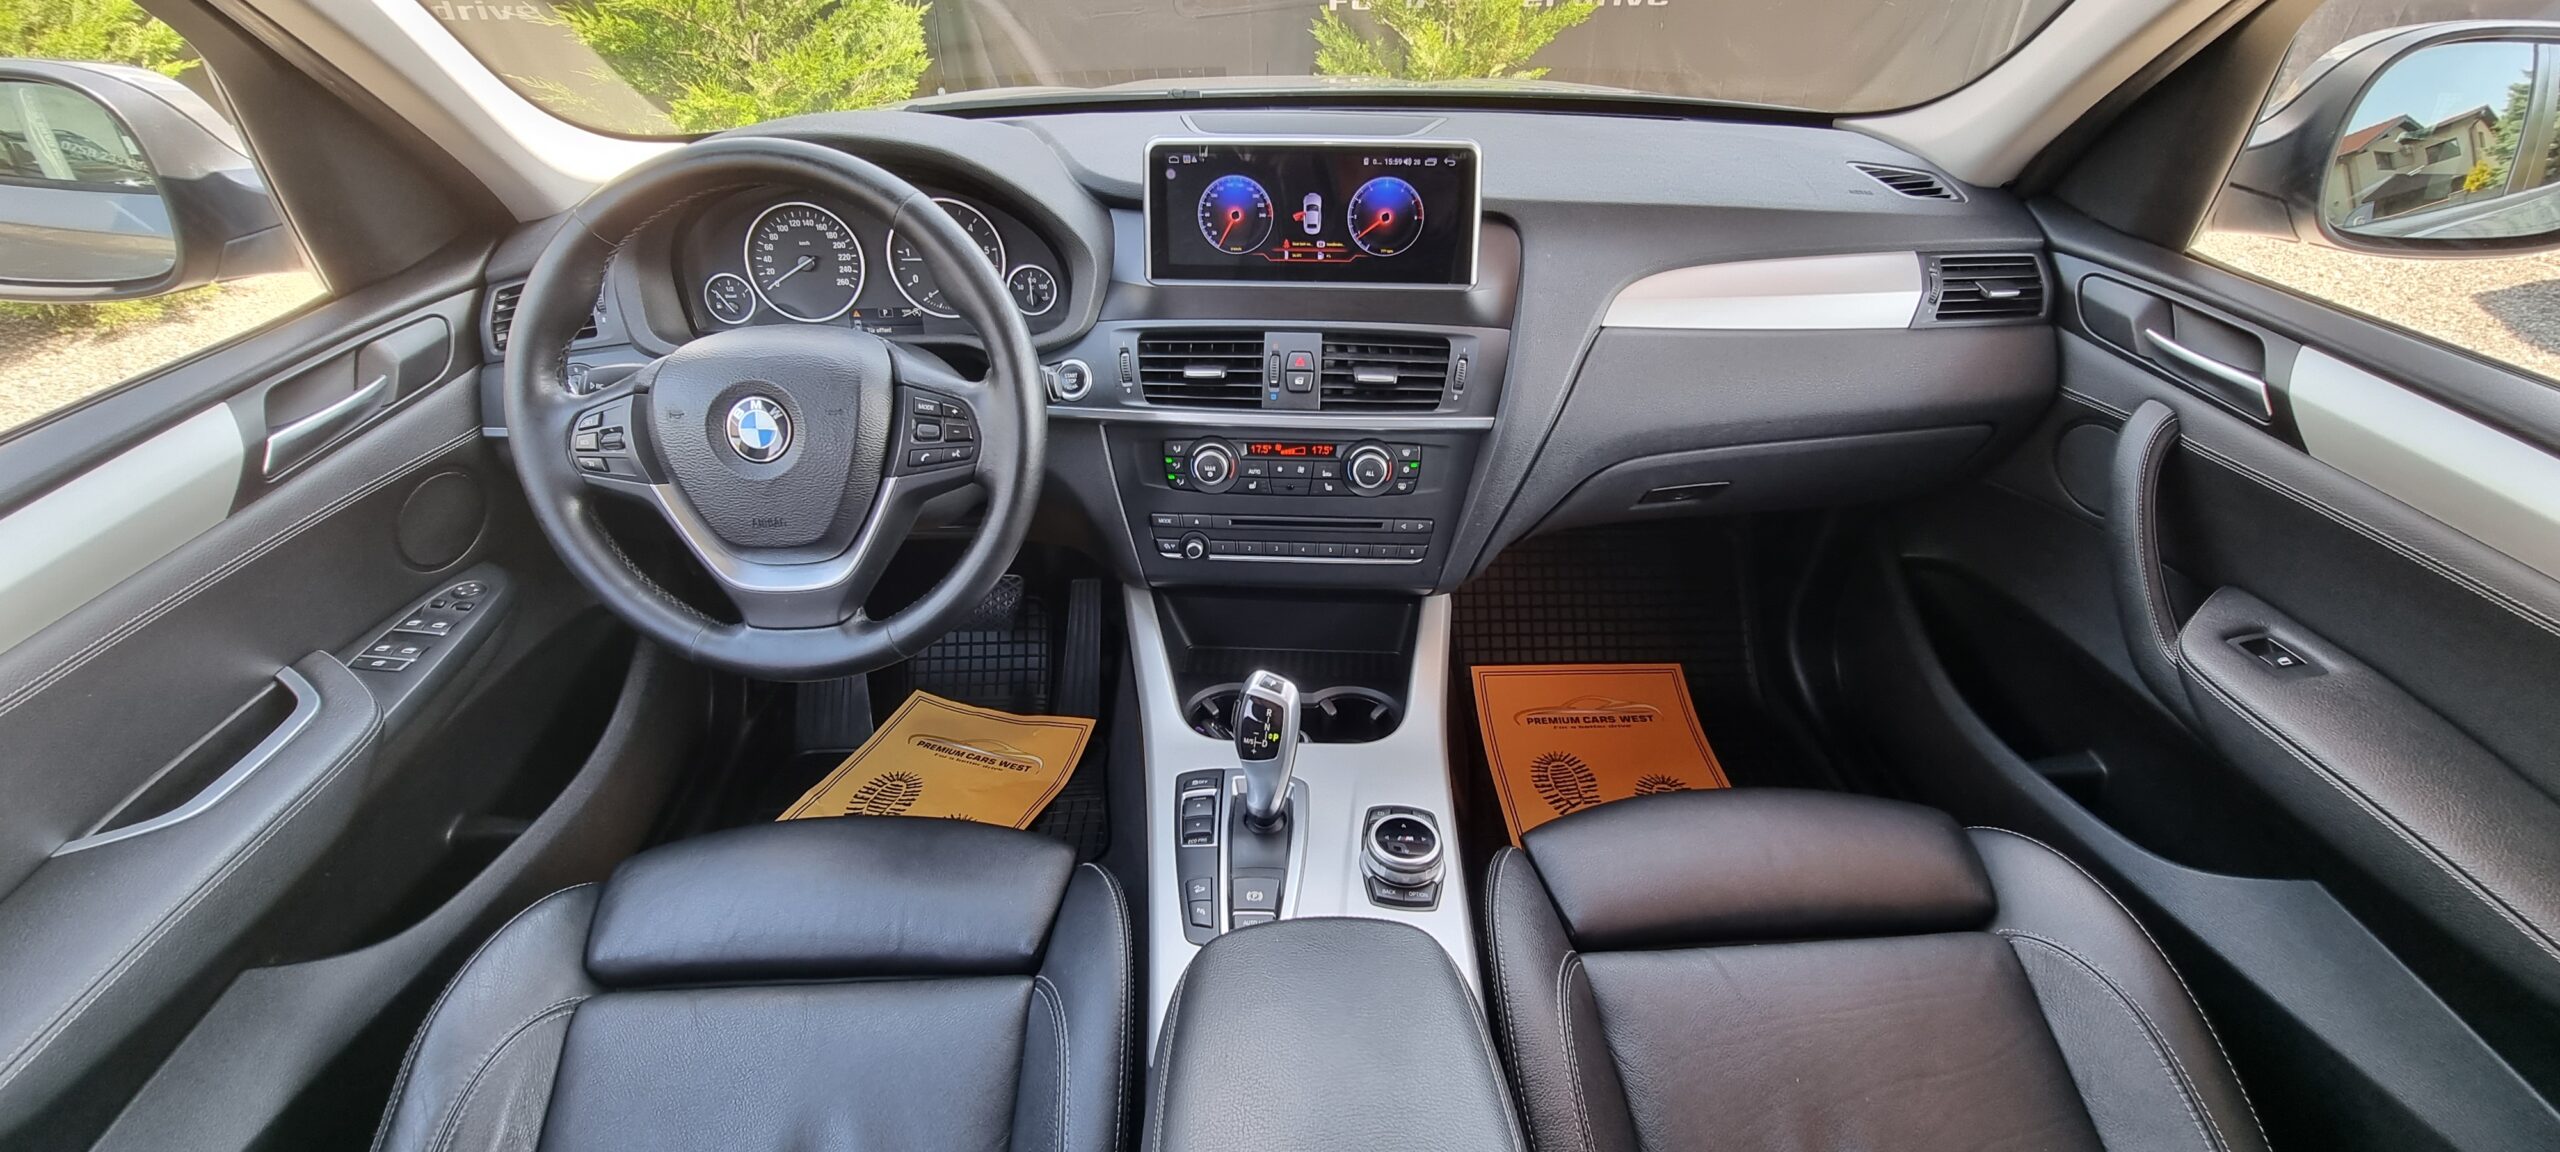 BMW X3, X DRIVE, 2.0 D, 184 CP, EURO 5, AN 2012